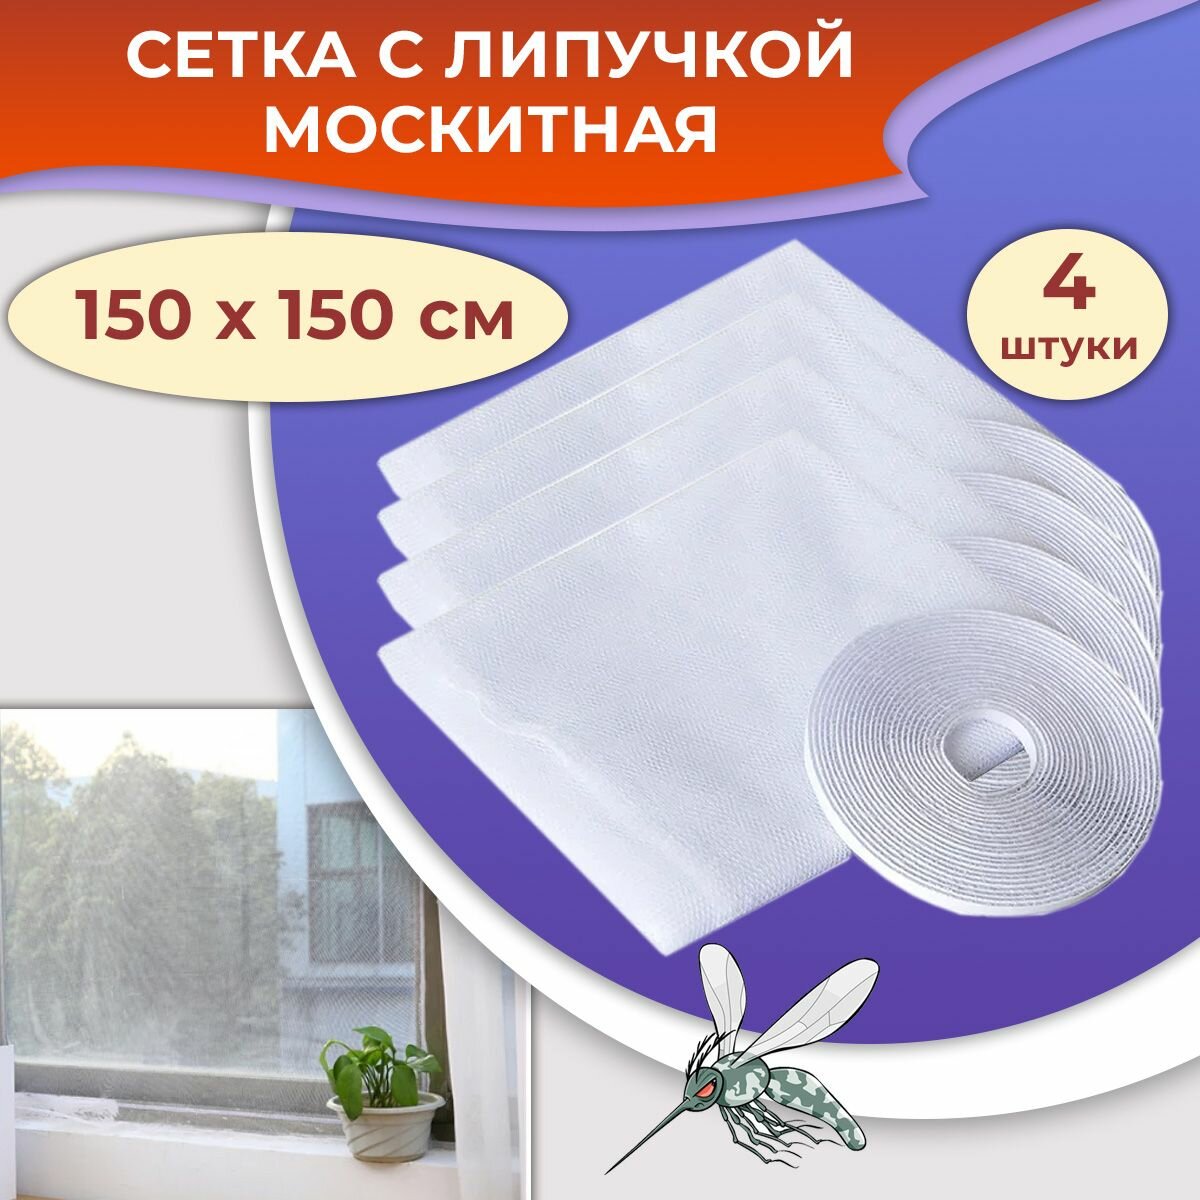 Лот 4 шт: Москитная сетка на окно с липкой лентой самоклейкой 150х150см белый